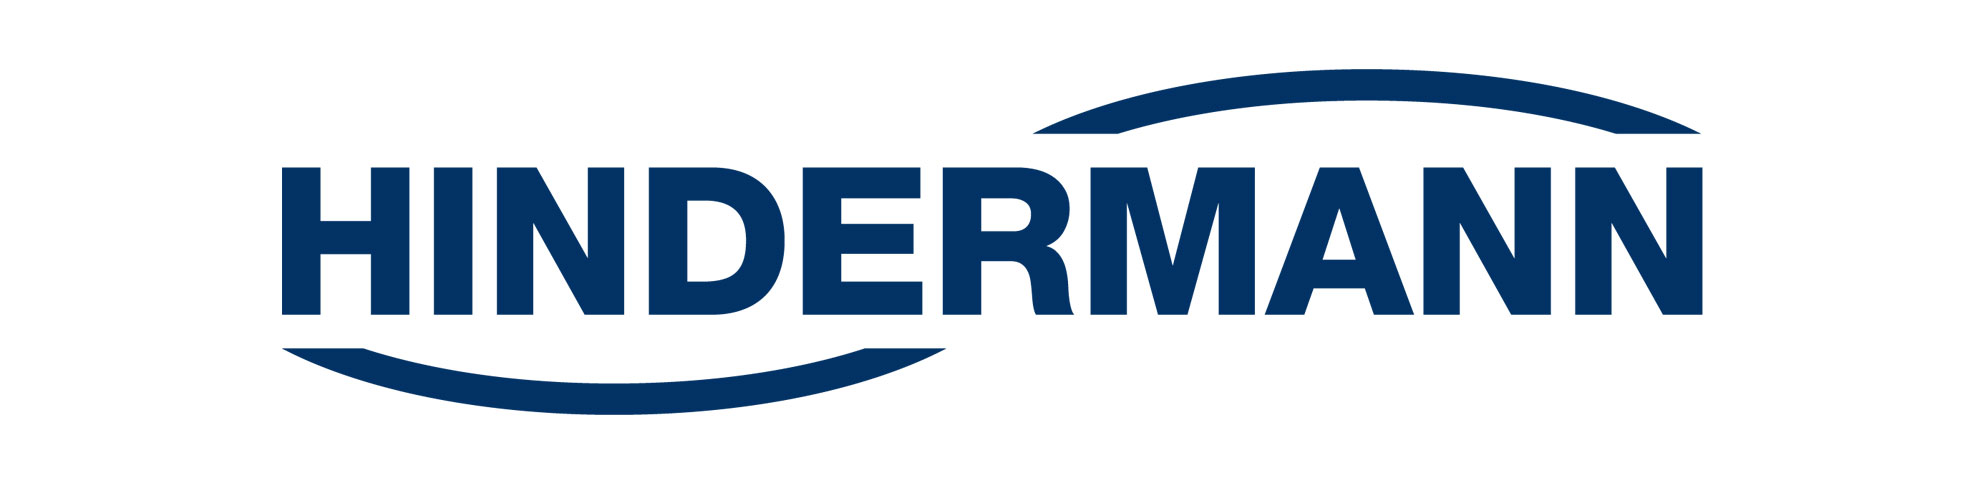 Hindermann – ein Markenprodukt Premium-Schutzhüllen und 70 Jahre deutsche Qualität | HINDERMANN